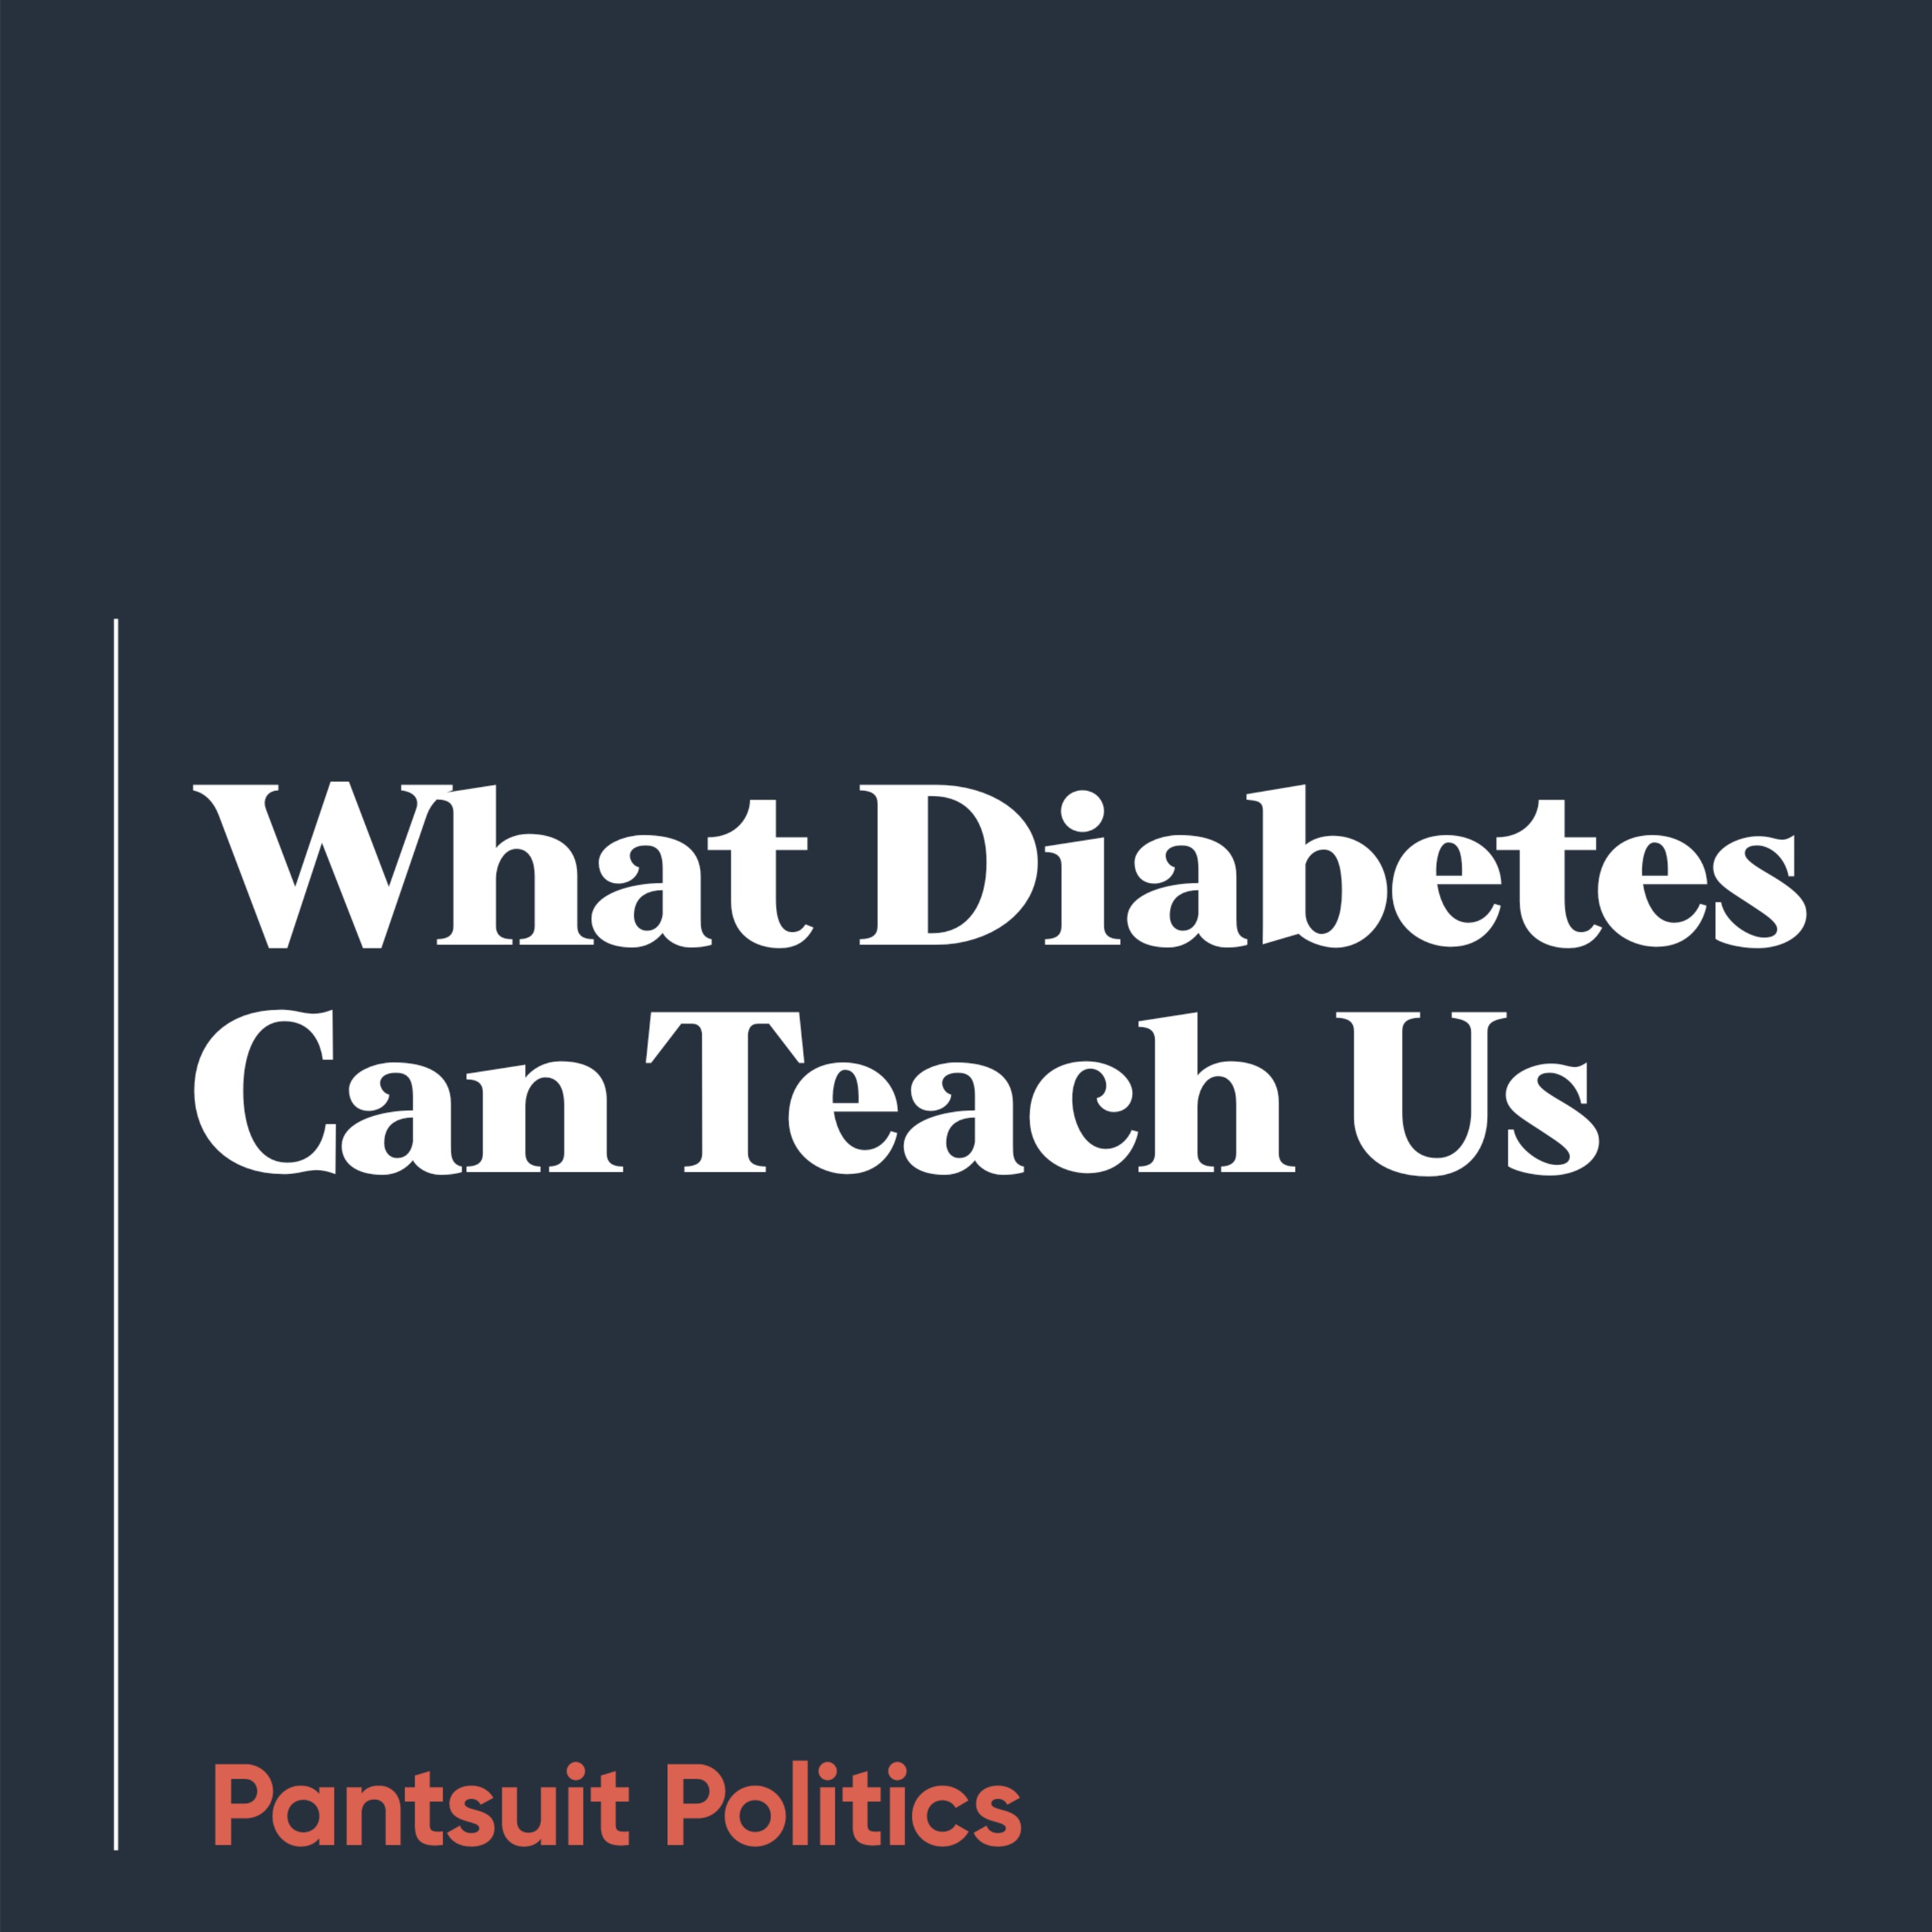 What Diabetes Can Teach Us